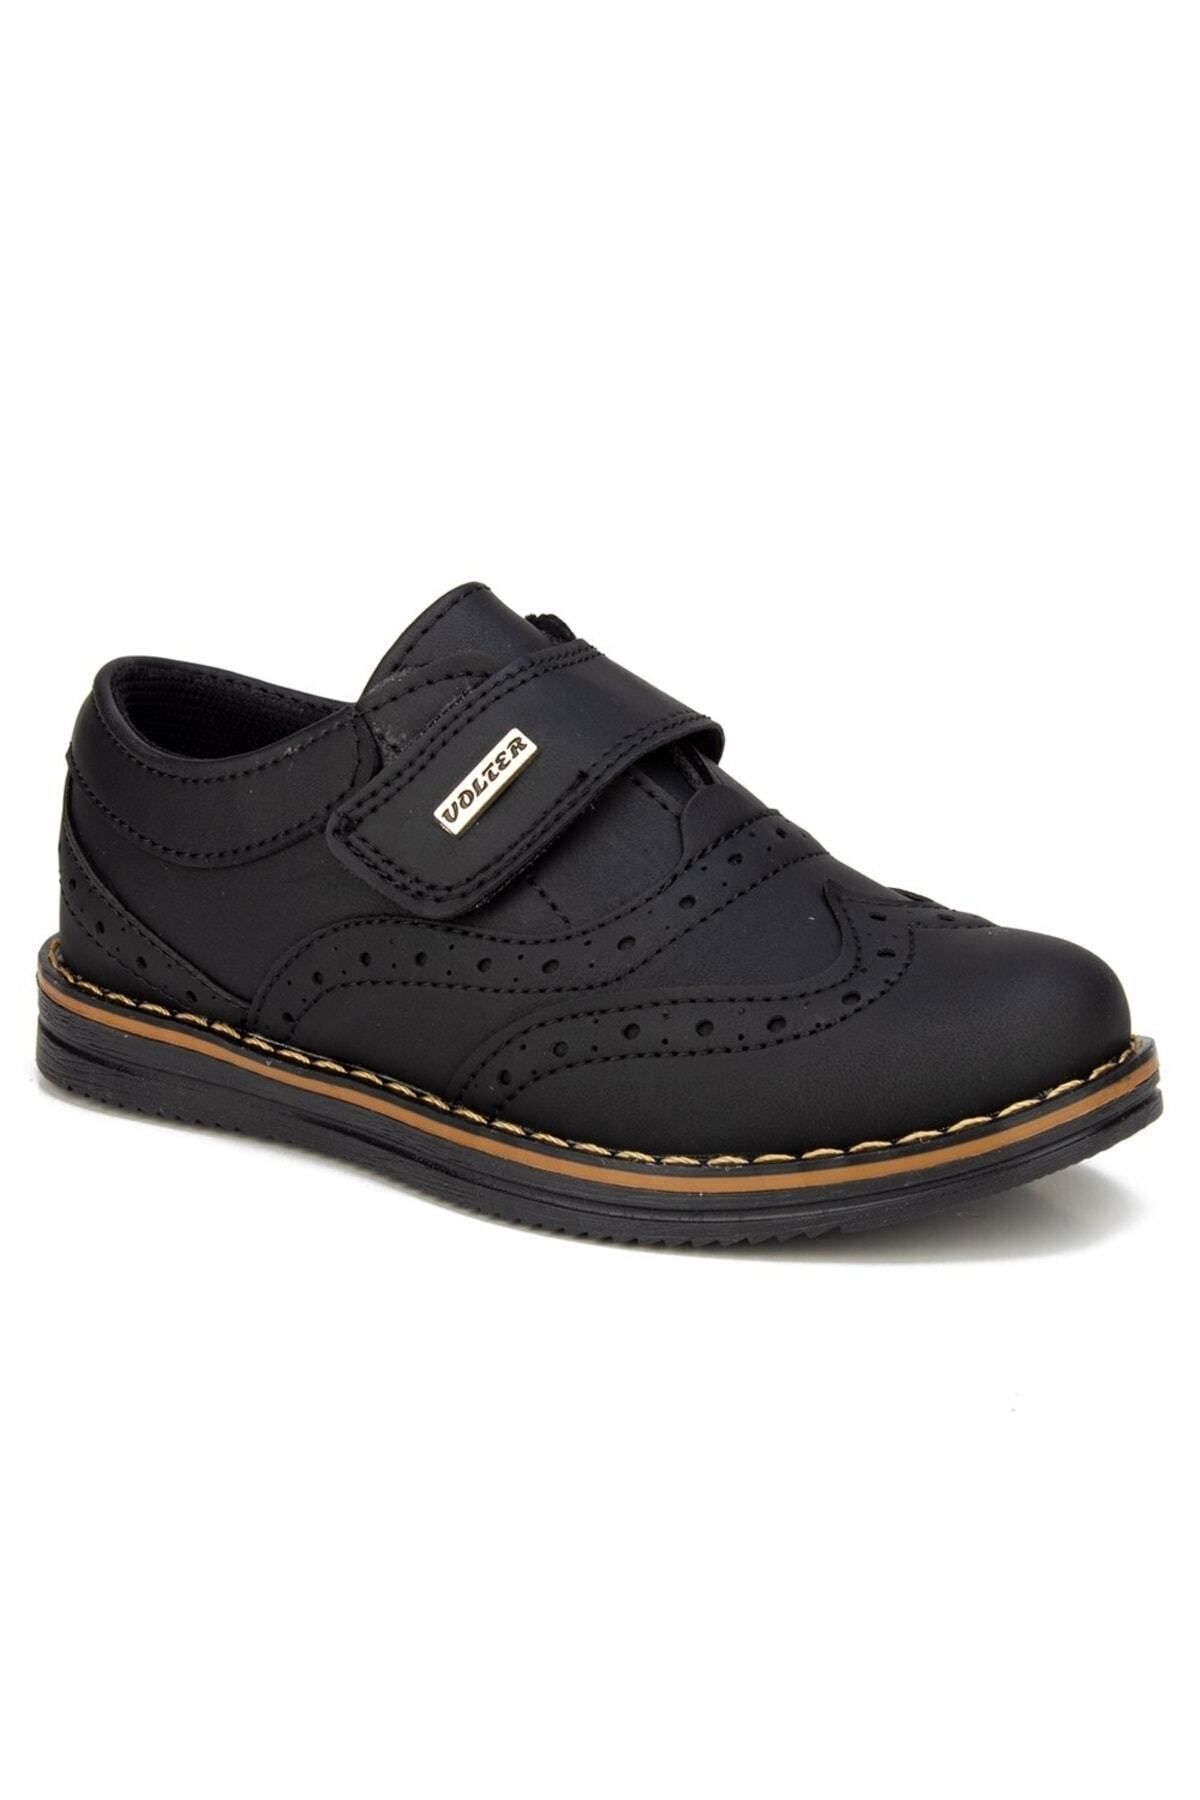 VOLTER Günlük Cırtlı Siyah Renk Günlük Cırtlı Bantlı Erkek Çocuk Klasik Ayakkabı